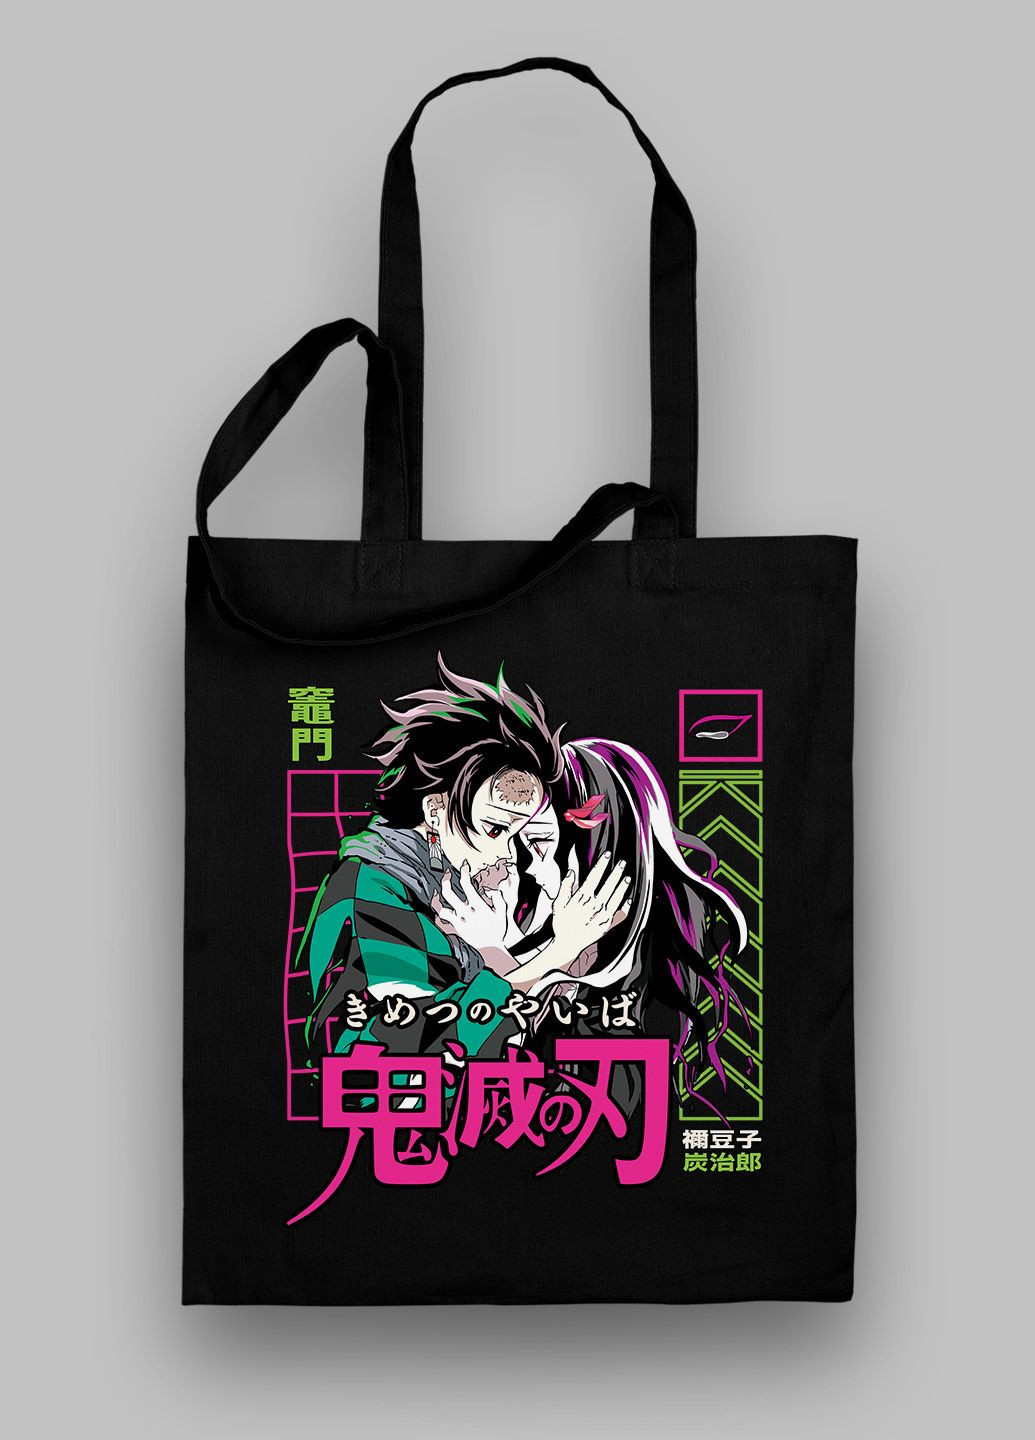 Черная сумка-шопер. Уникальный принт. Аниме (манга) «Клинок, уничтожающий демонов» (Anime Manga «Demon Slayer») от Art Forest (292632482)